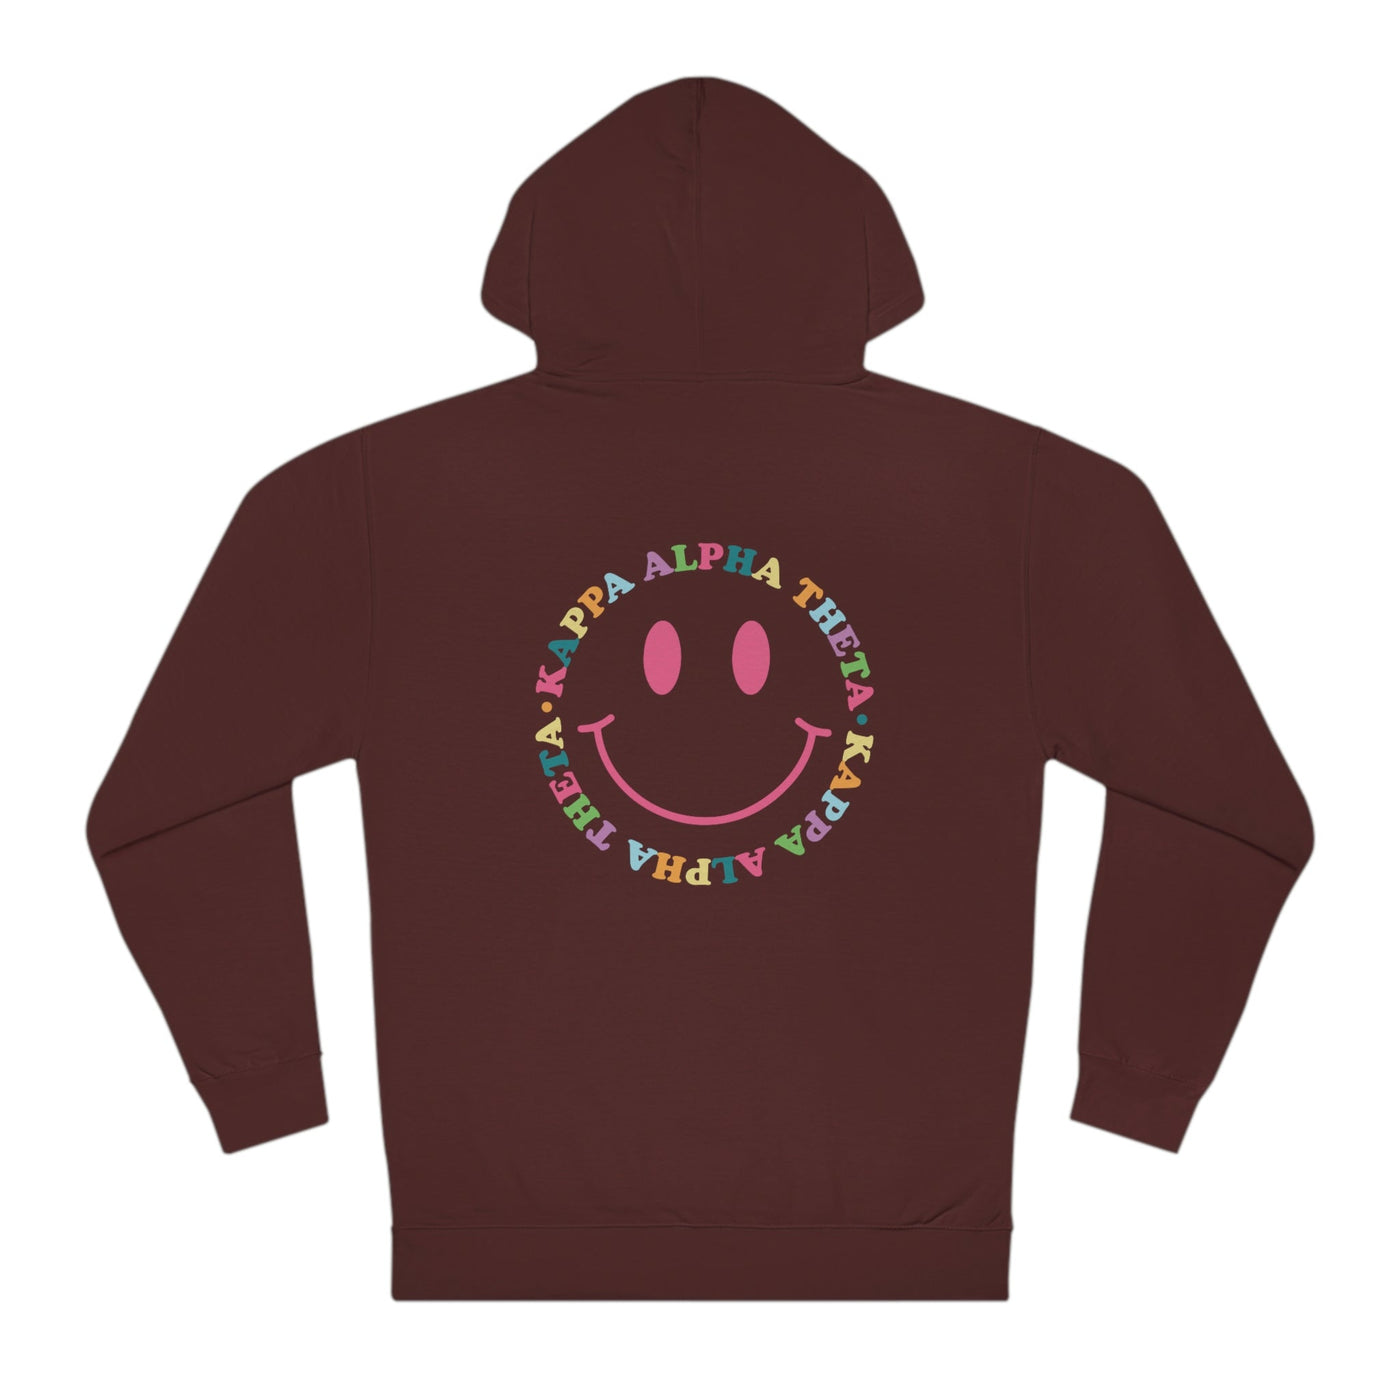 Kappa Alpha Theta Colorful Smiley Sweatshirt, Trendy Theta Sorority Hoodie